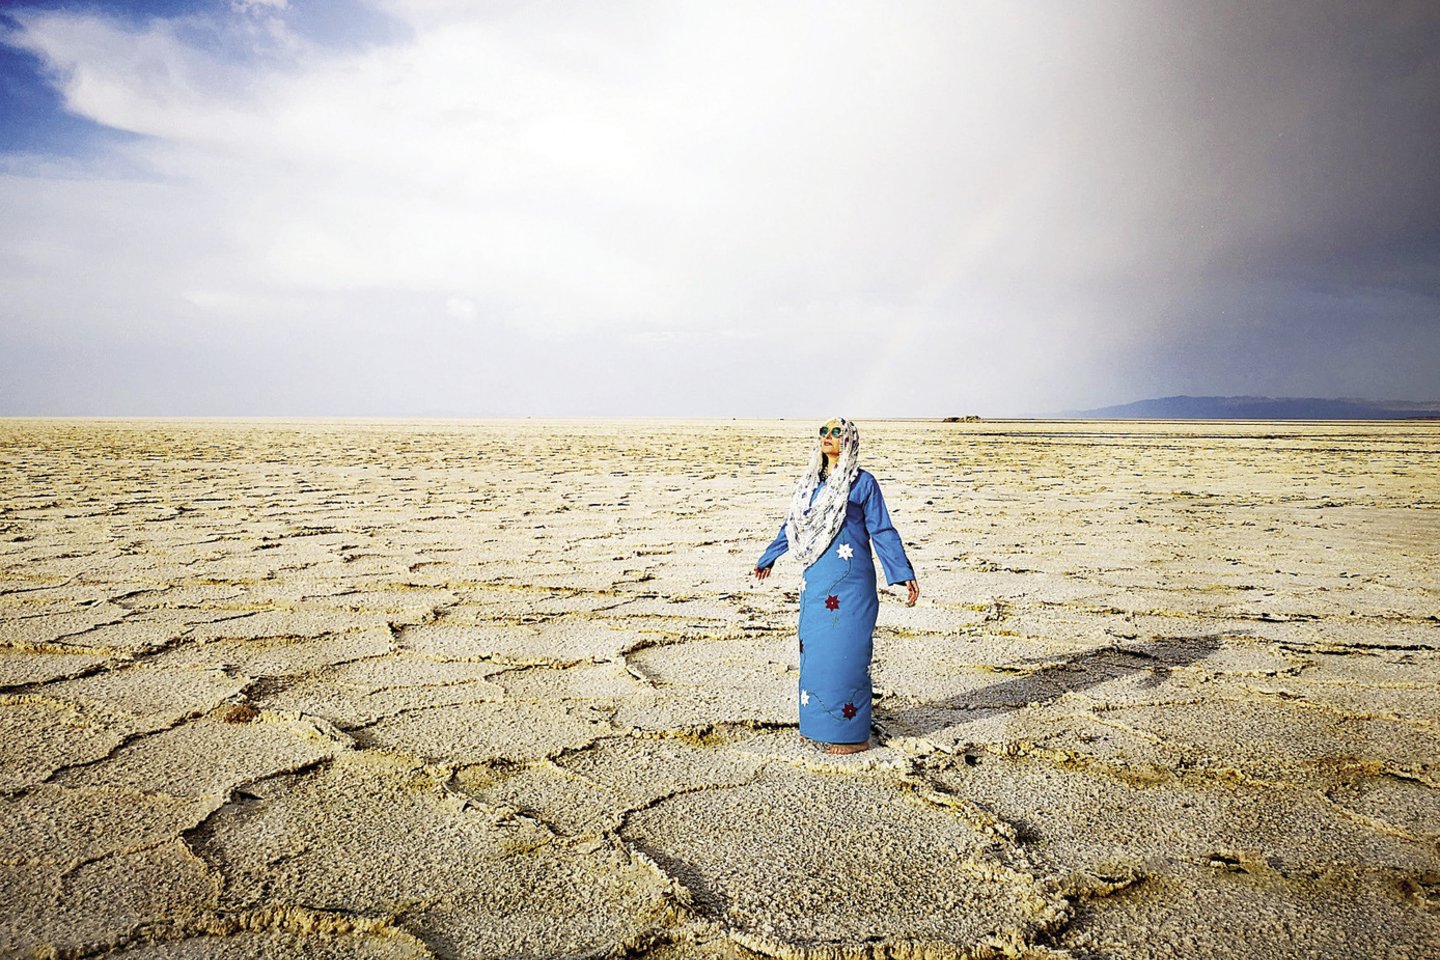 Įspūdingas Irano kraštovaizdžio reiškinys – dykumoje susiformavęs sausas druskos ežeras, atrodantis tarsi didelė mirusi jūra.<br> I.Skliutaitės nuotr.